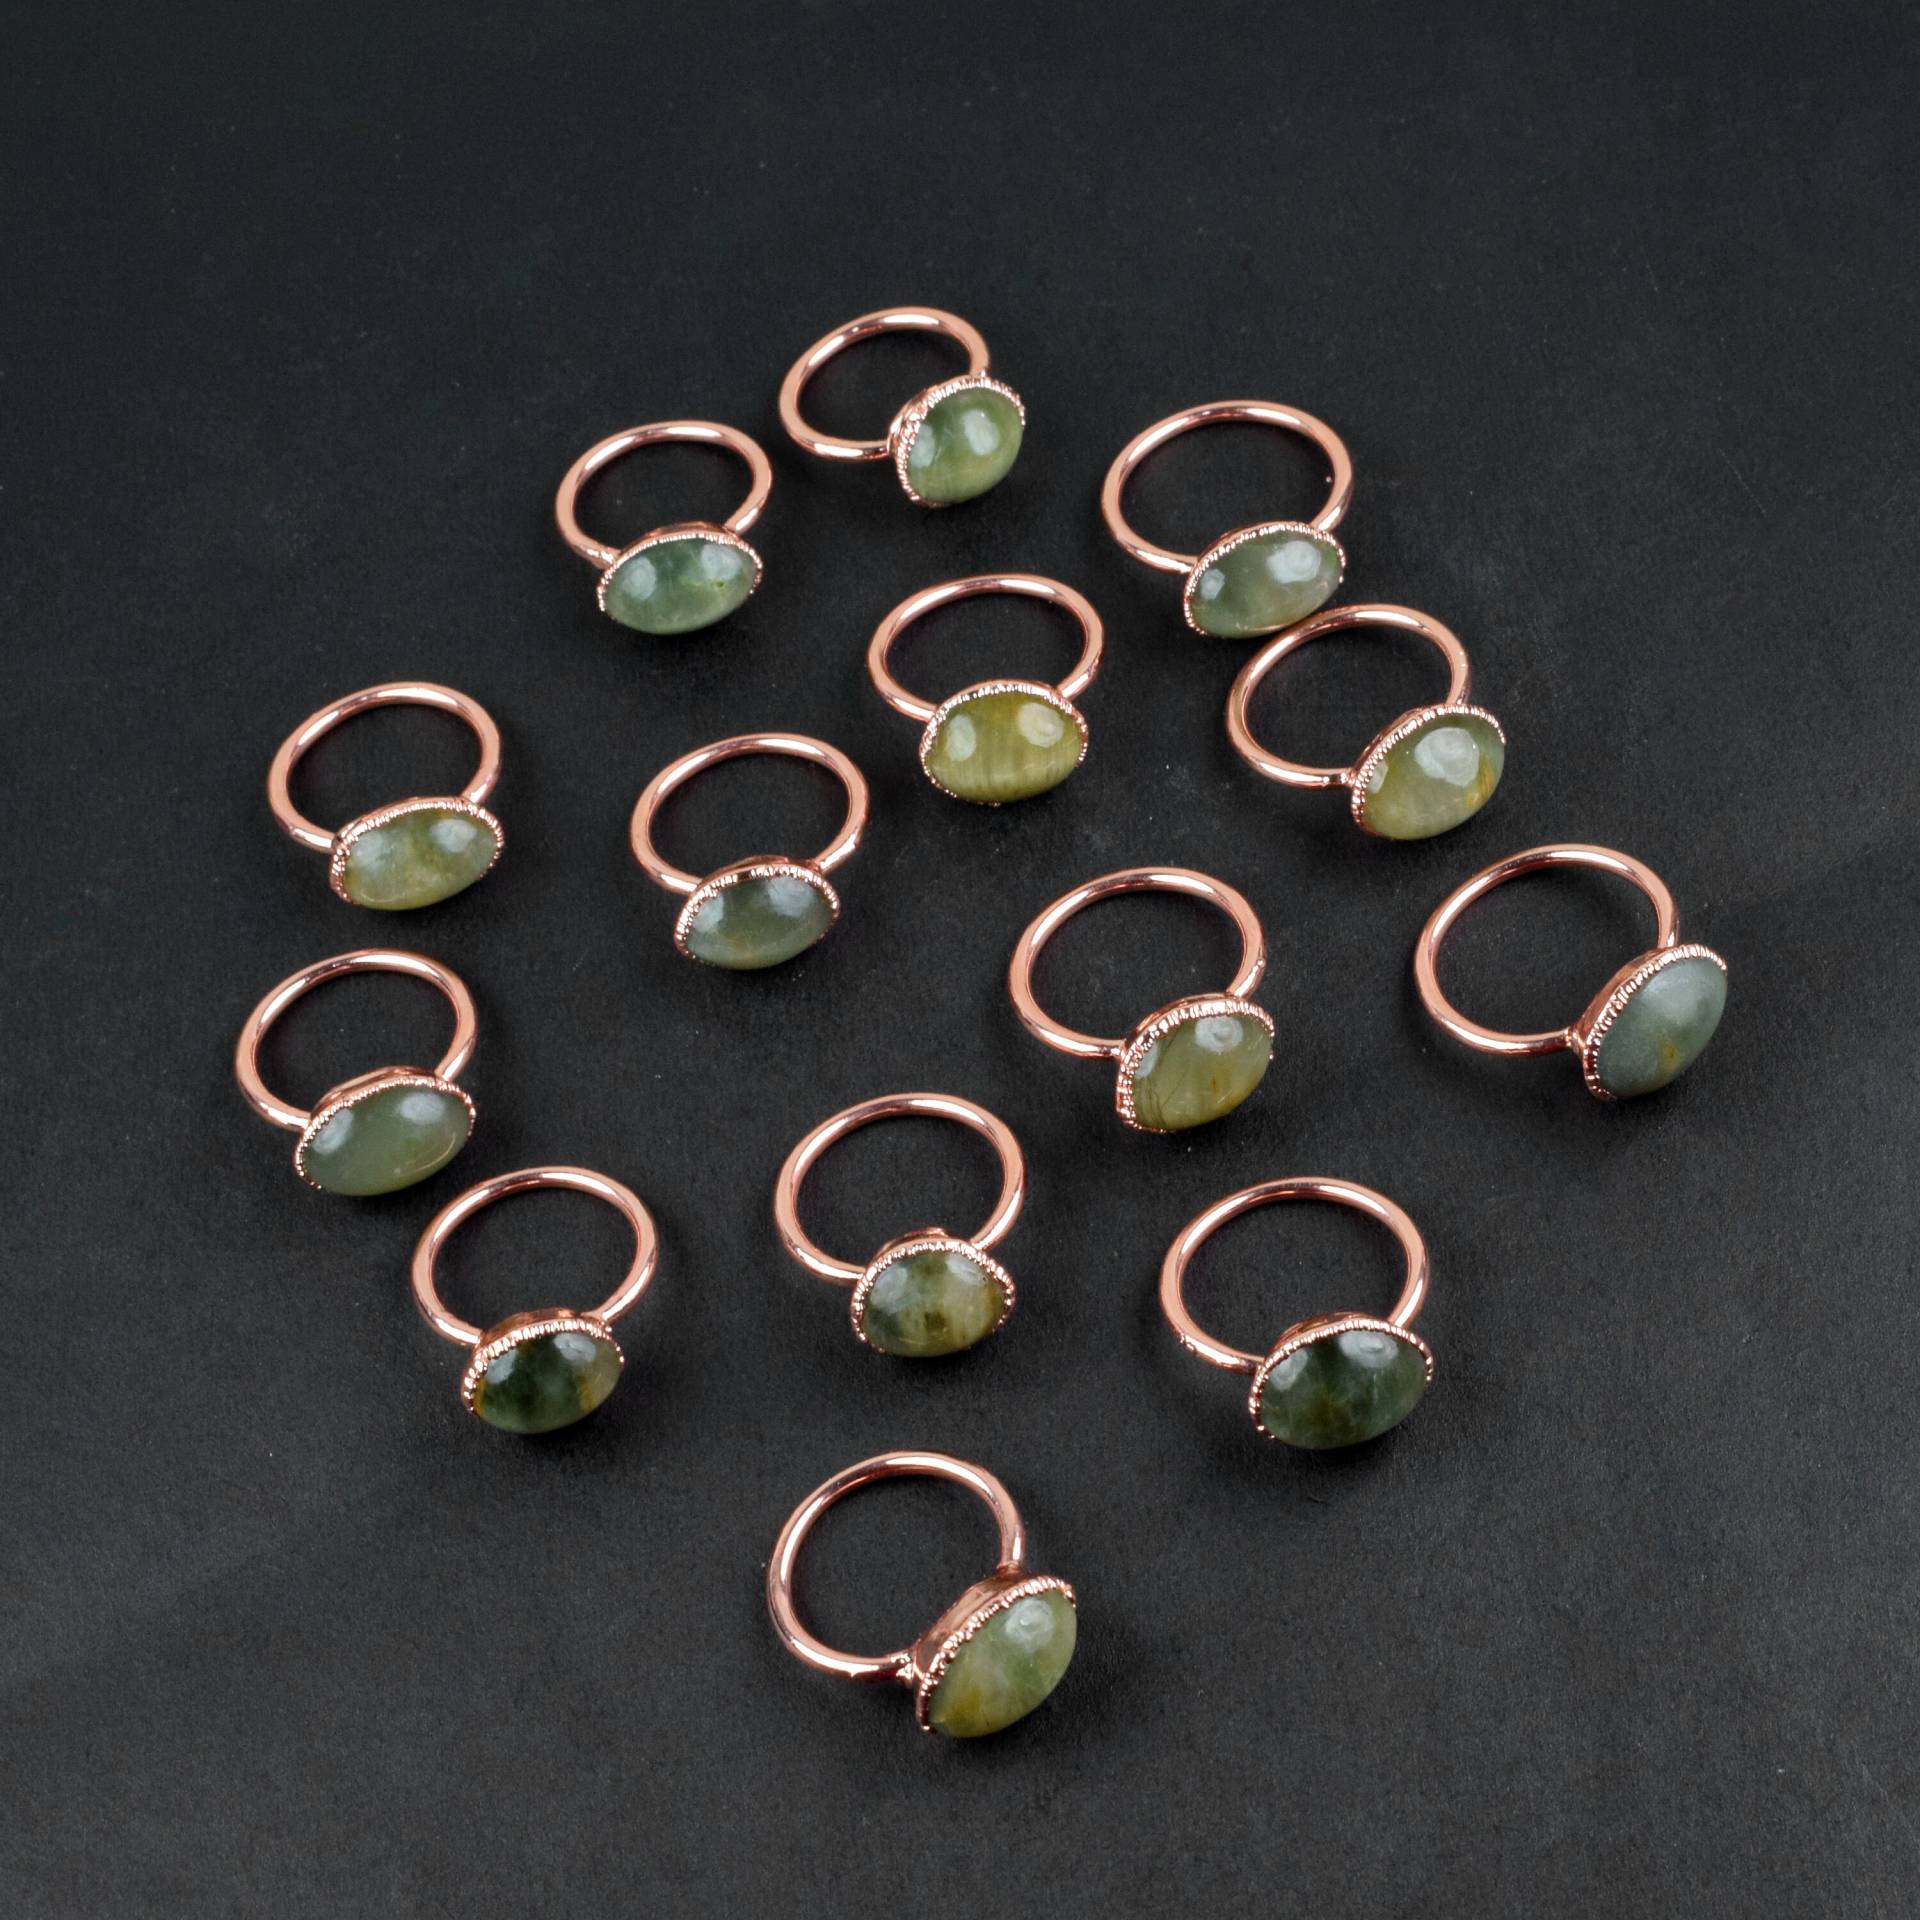 15 Stück Natürliche Katzenauge Edelstein Ringe Großhandel Handgemachter Schmuck Minimlaist Ring Bulk Cabochon Für Sie von GemFormingStudio